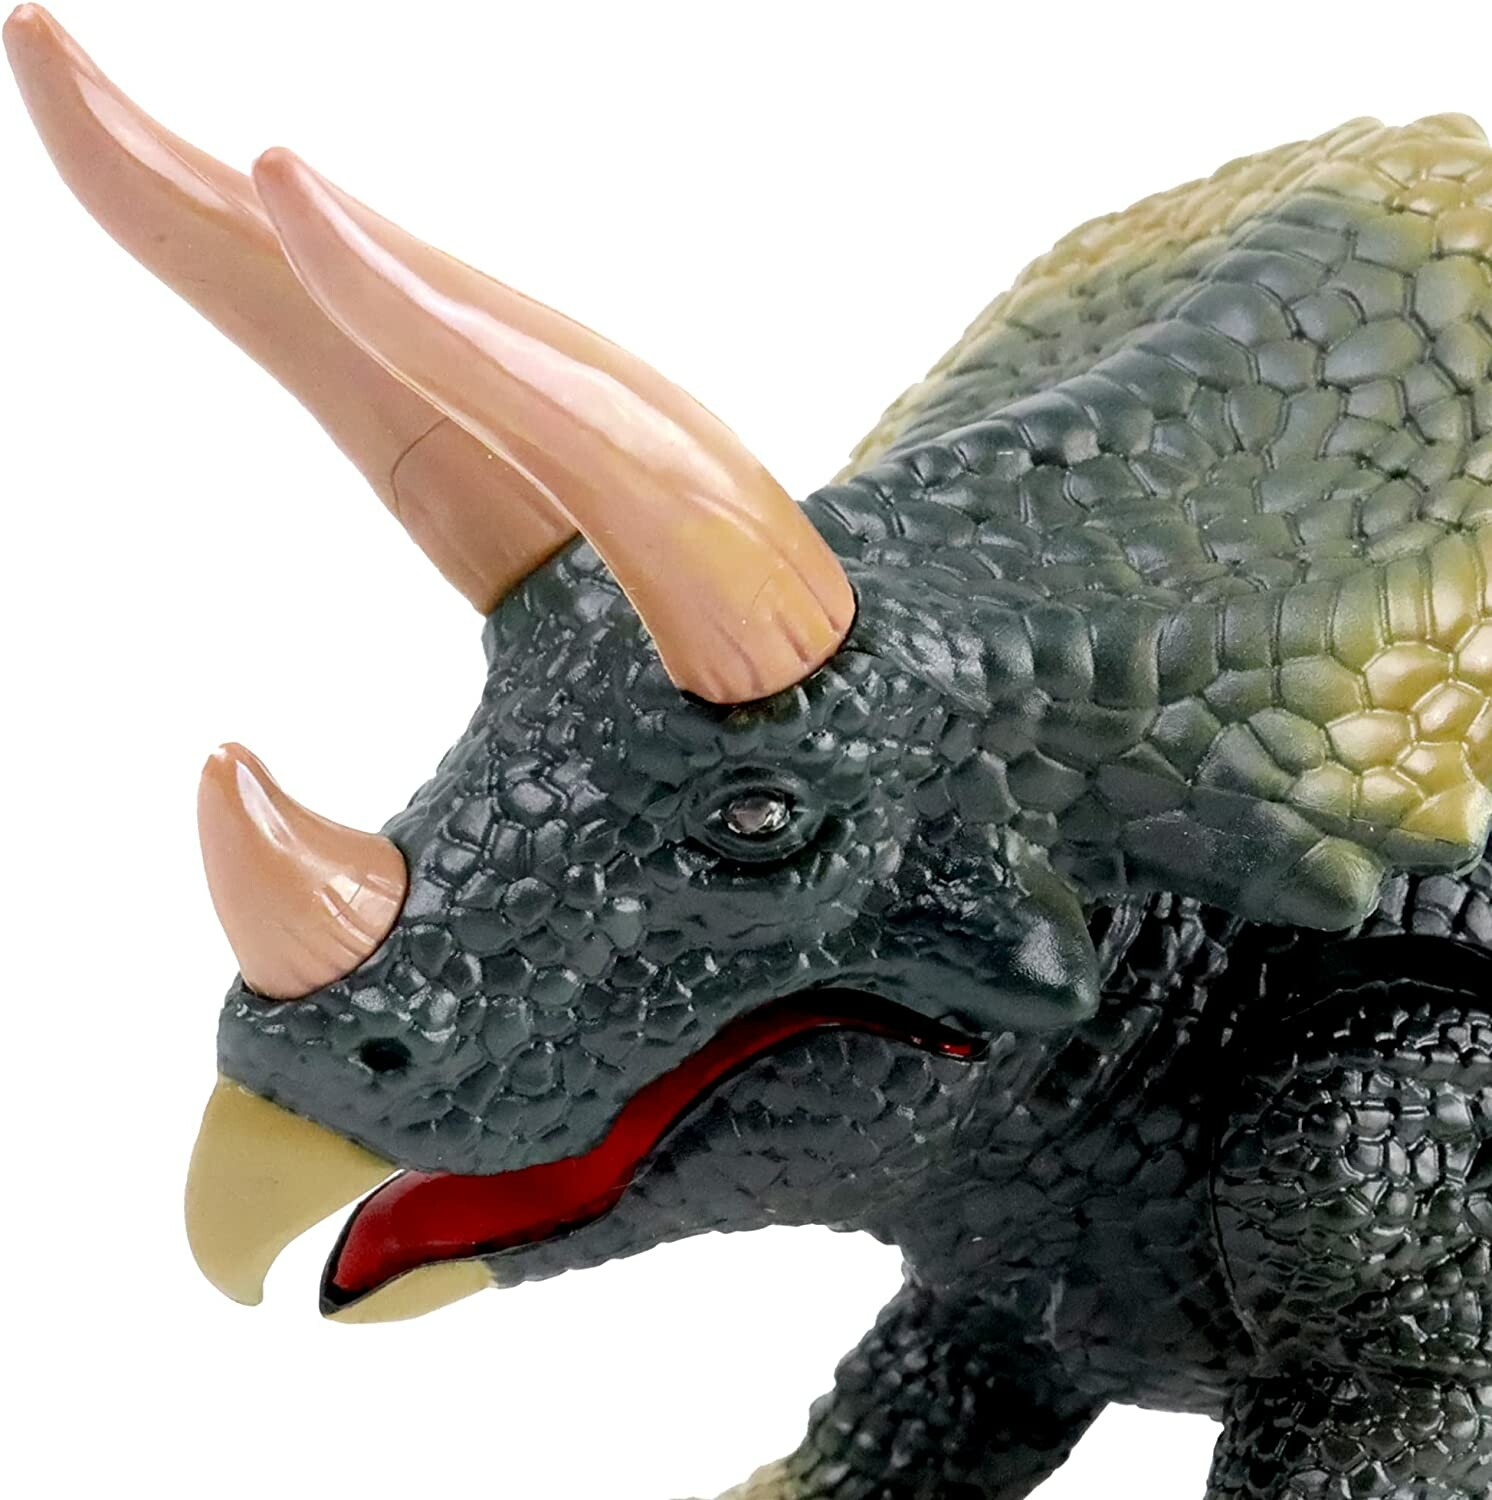 Dinosaure Triceratops télécommandé de 25 cm, Robots